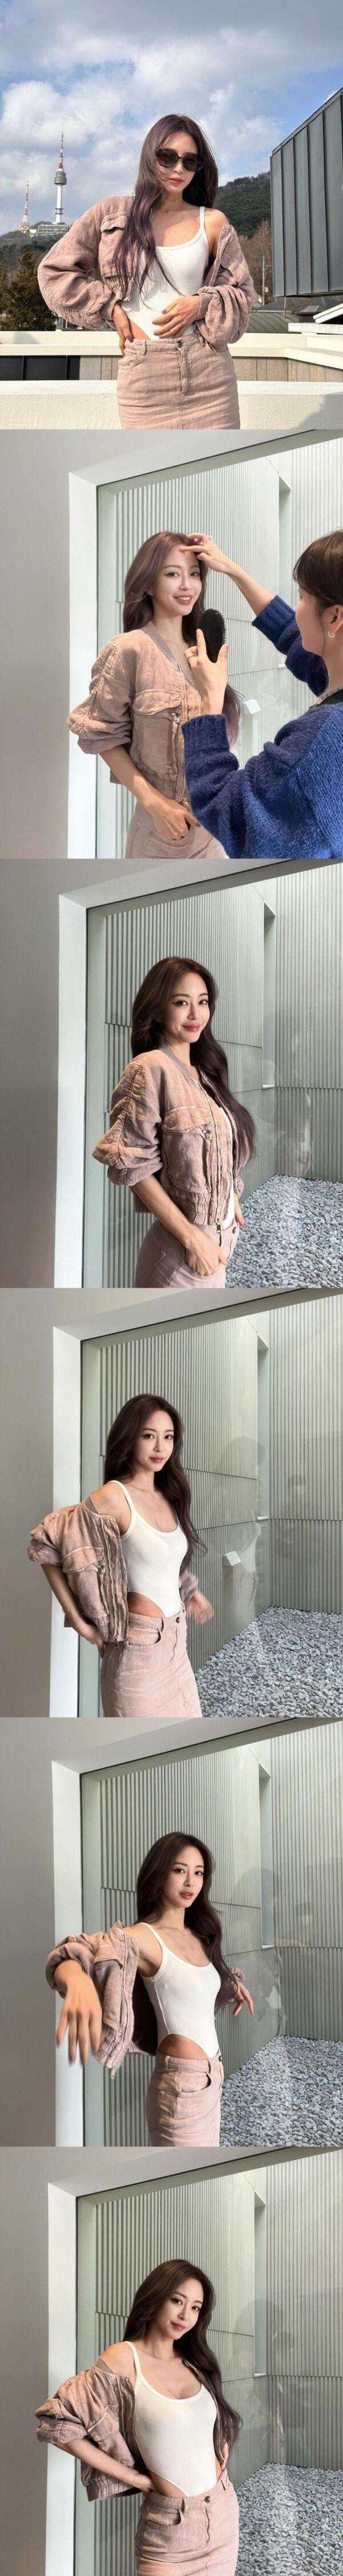 한예슬, 남산타워 배경으로 섹시한 모노키니 패션 선보여